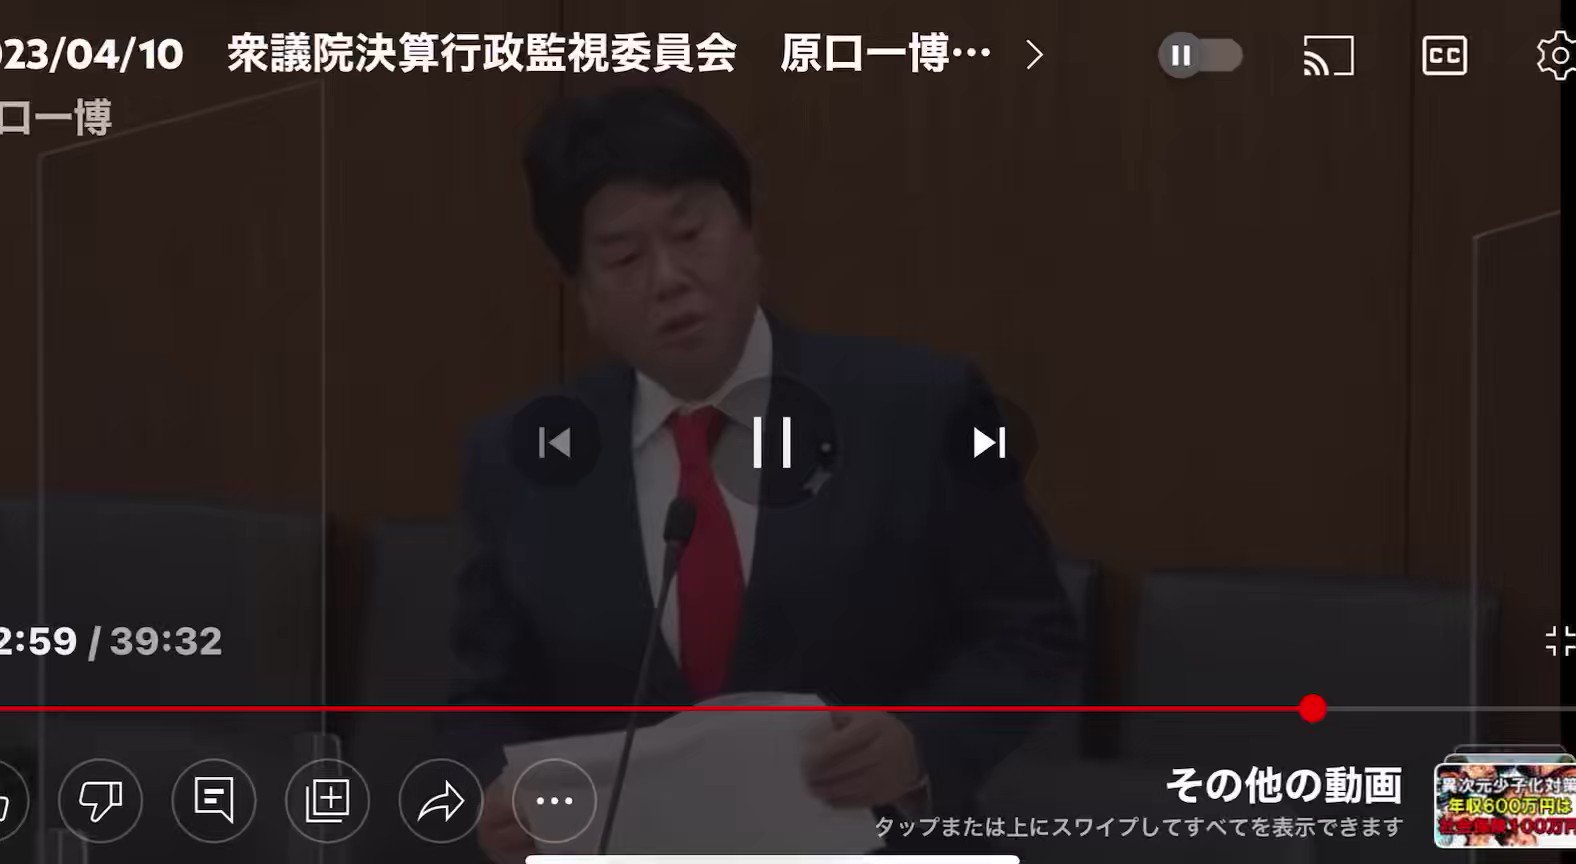 [討論] 都說台灣有事是日本有事 日本真的會幫嗎